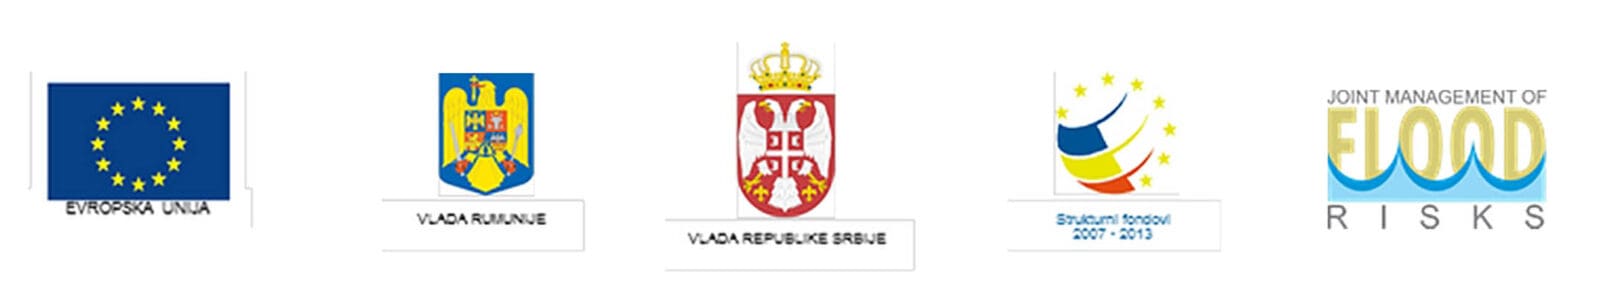 1-rcr-banat-logo